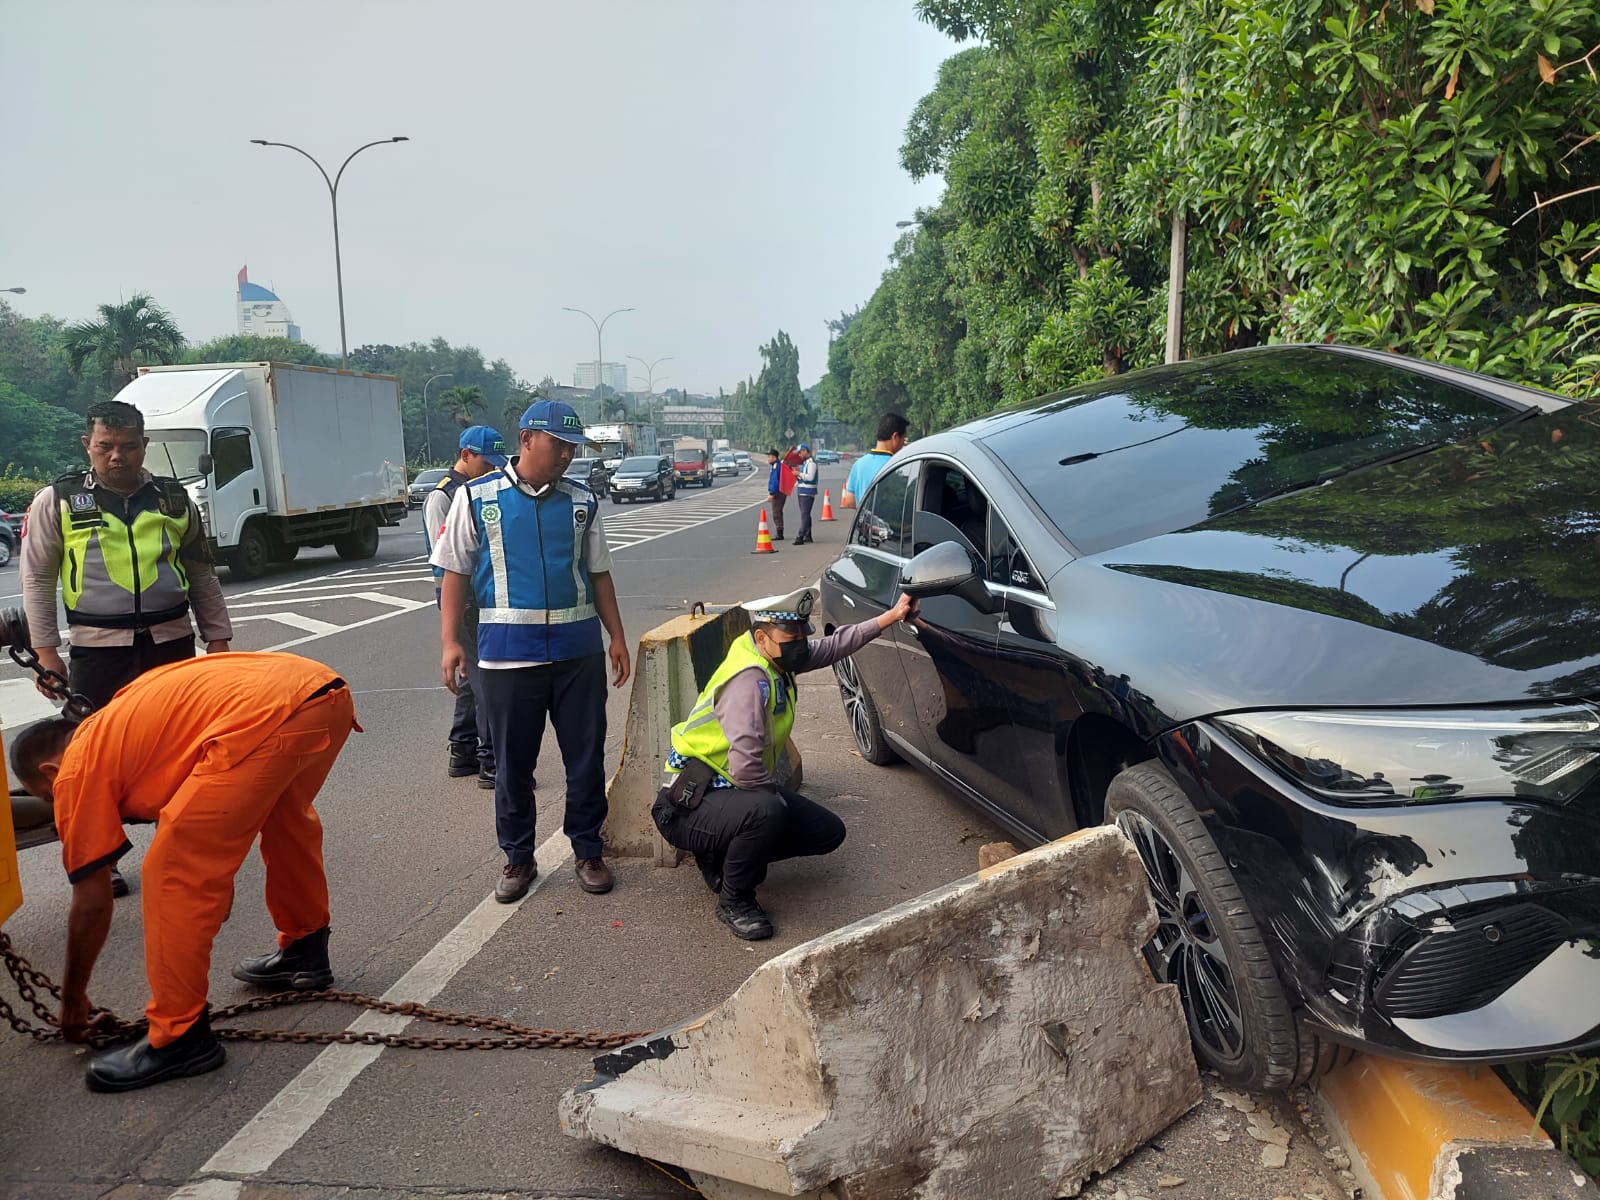 Mobil Listrik Mercedes-Benz Kecelakaan di Tol Jakarta, Pengemudi: Setir Narik ke Kiri